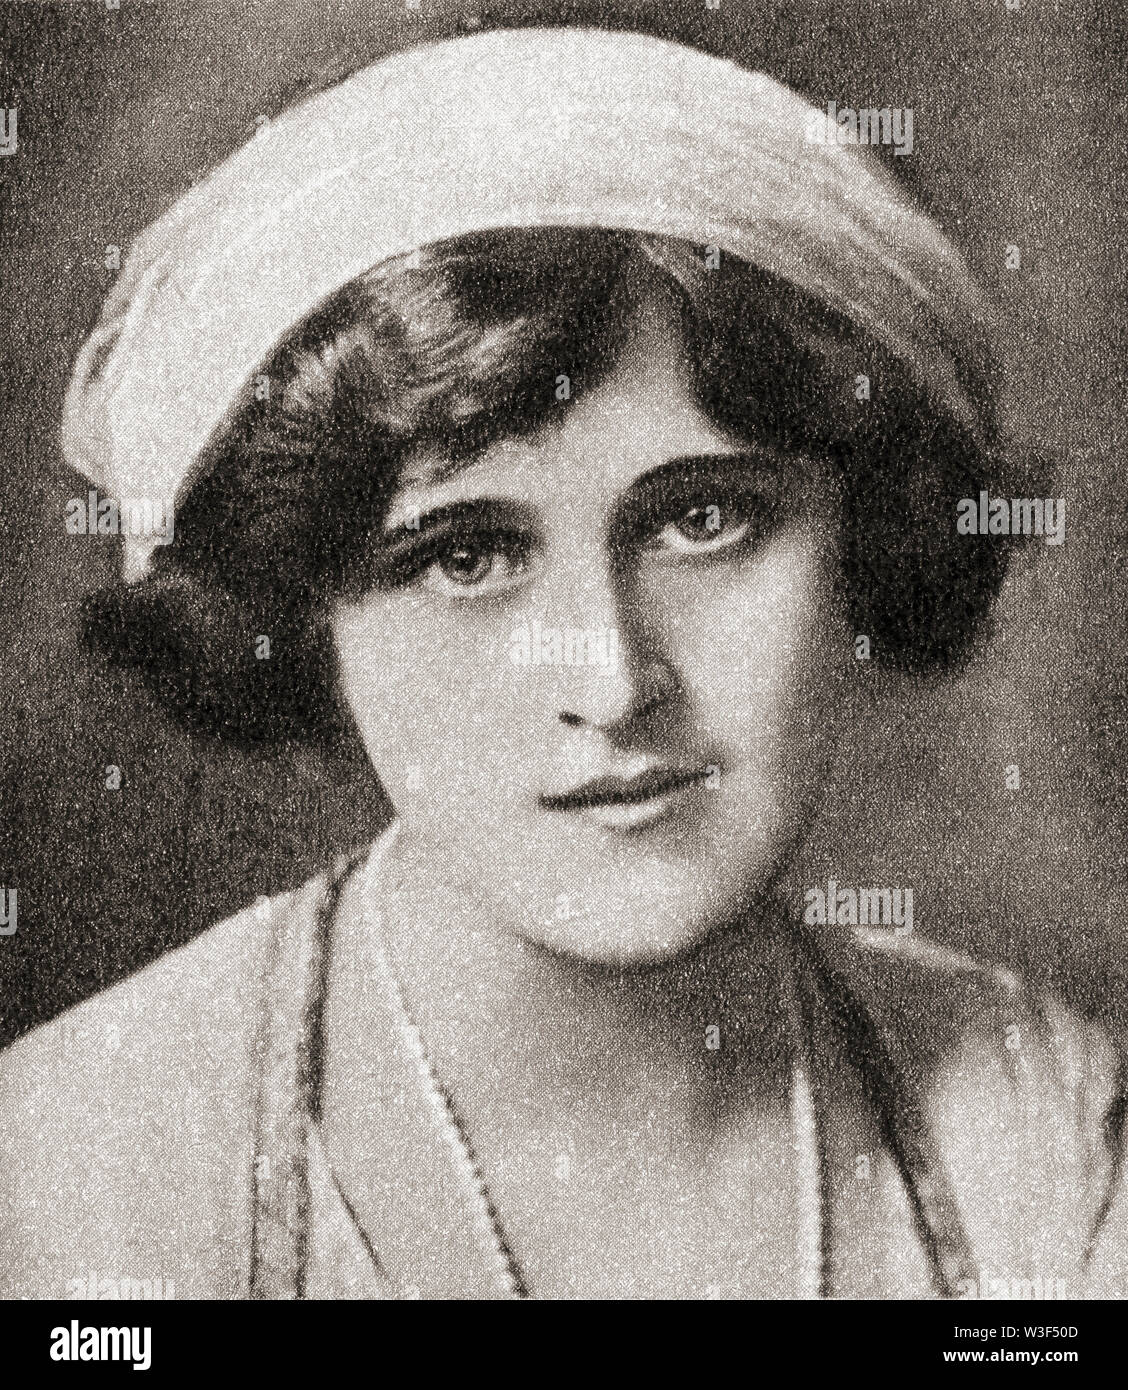 EDITORIAL Zena Wagen, geboren in Florenz Hariette Zena Dones, 1887 - 1975. Englische Sängerin und Schauspielerin. Aus dem Festzug des Jahrhunderts, veröffentlicht 1934. Stockfoto